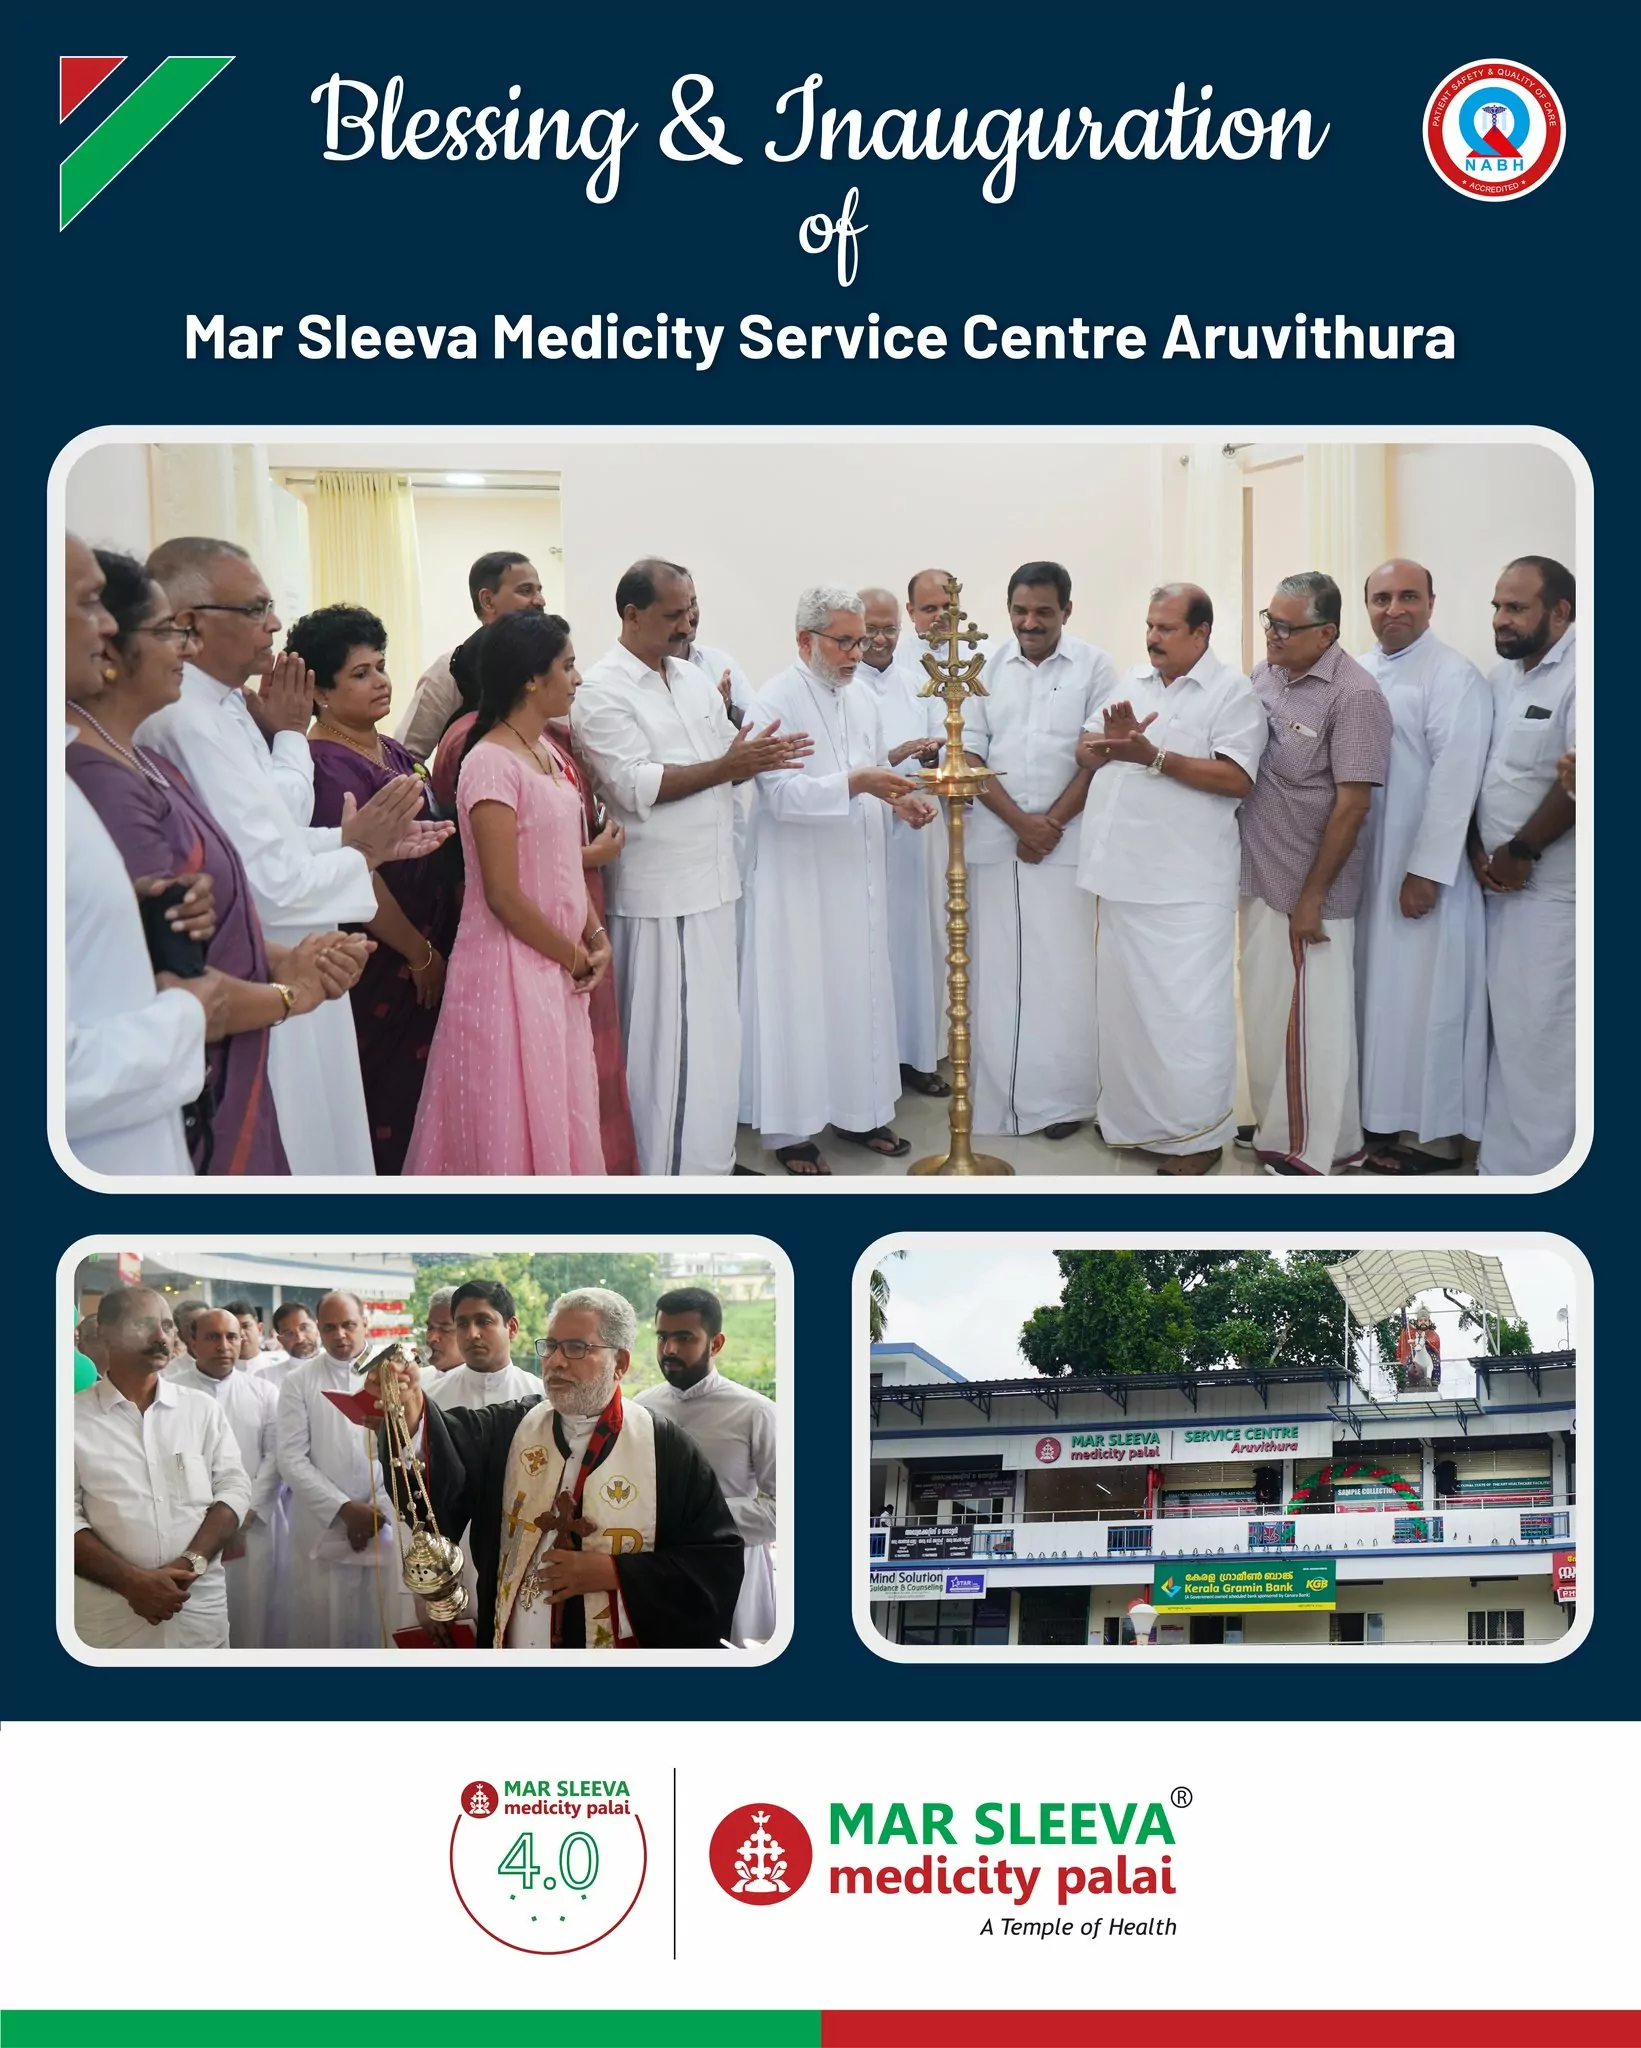 The new Mar Sleeva Medicity Service Centre at Aruvithura